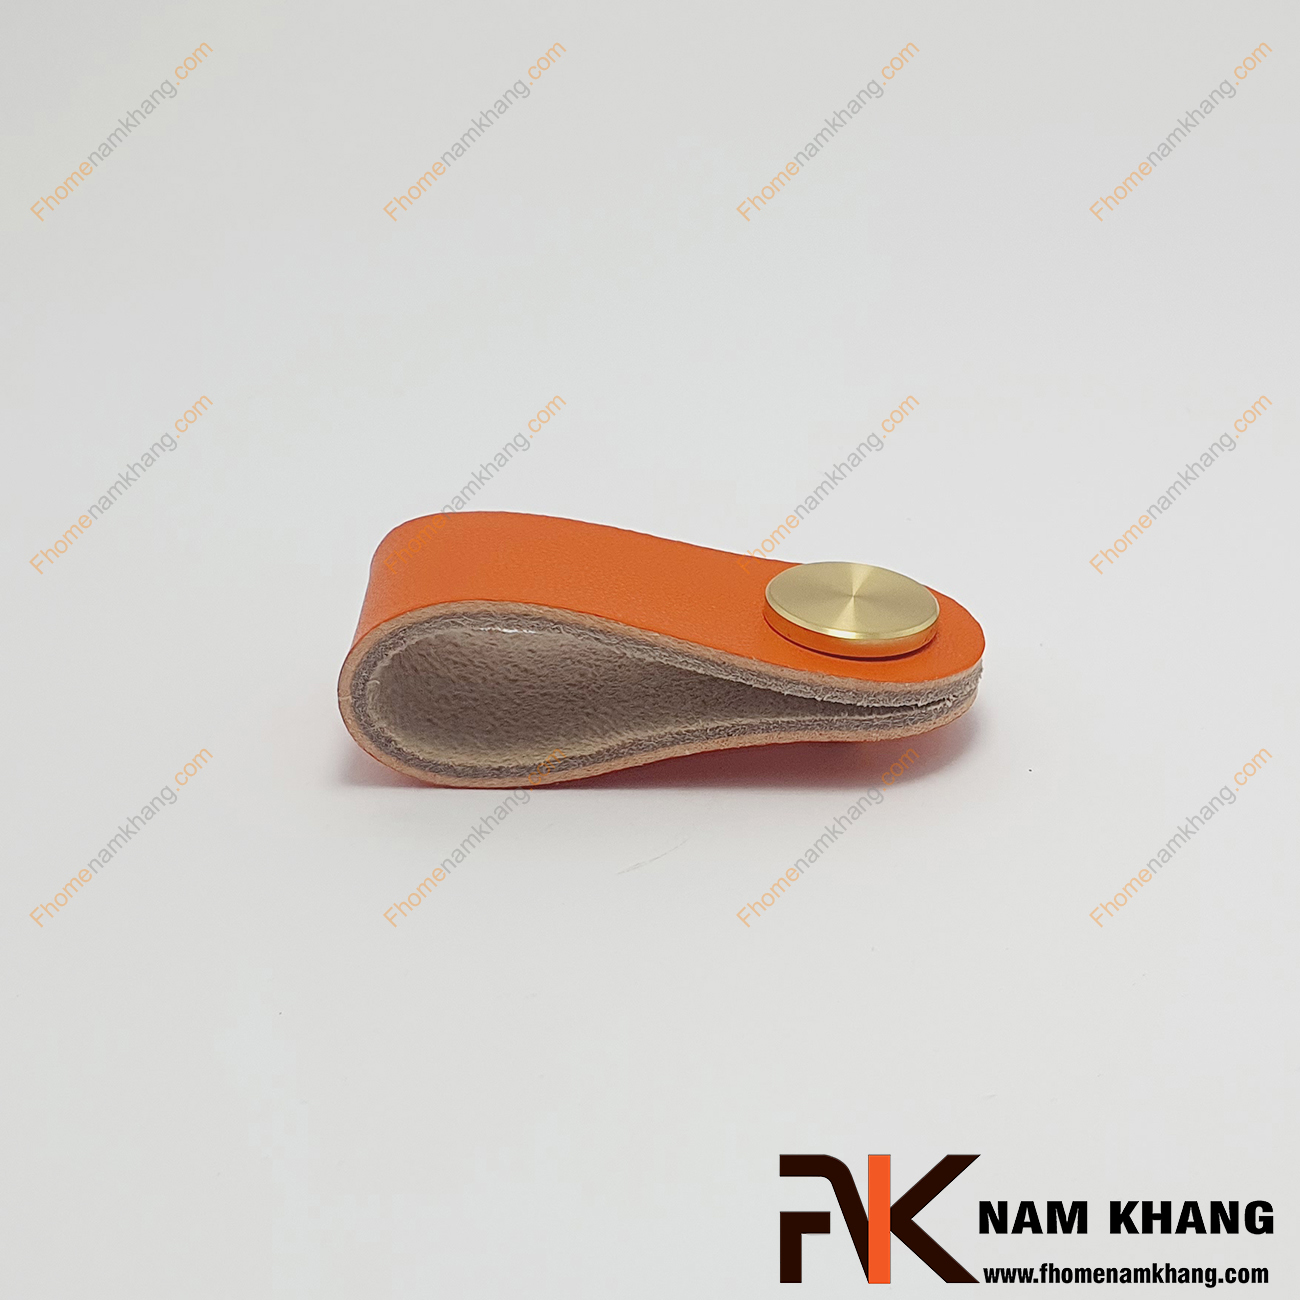 Núm cửa tủ bằng da chân đế hợp kim NK491D-C - mẫu tay nắm tủ bằng da mềm mại được phối hợp với chất liệu hợp kim vàng bóng ở phần đế vừa tạo điểm nhấn vừa mang đến một phong cách phối hợp nhẹ nhàng, cao cấp.